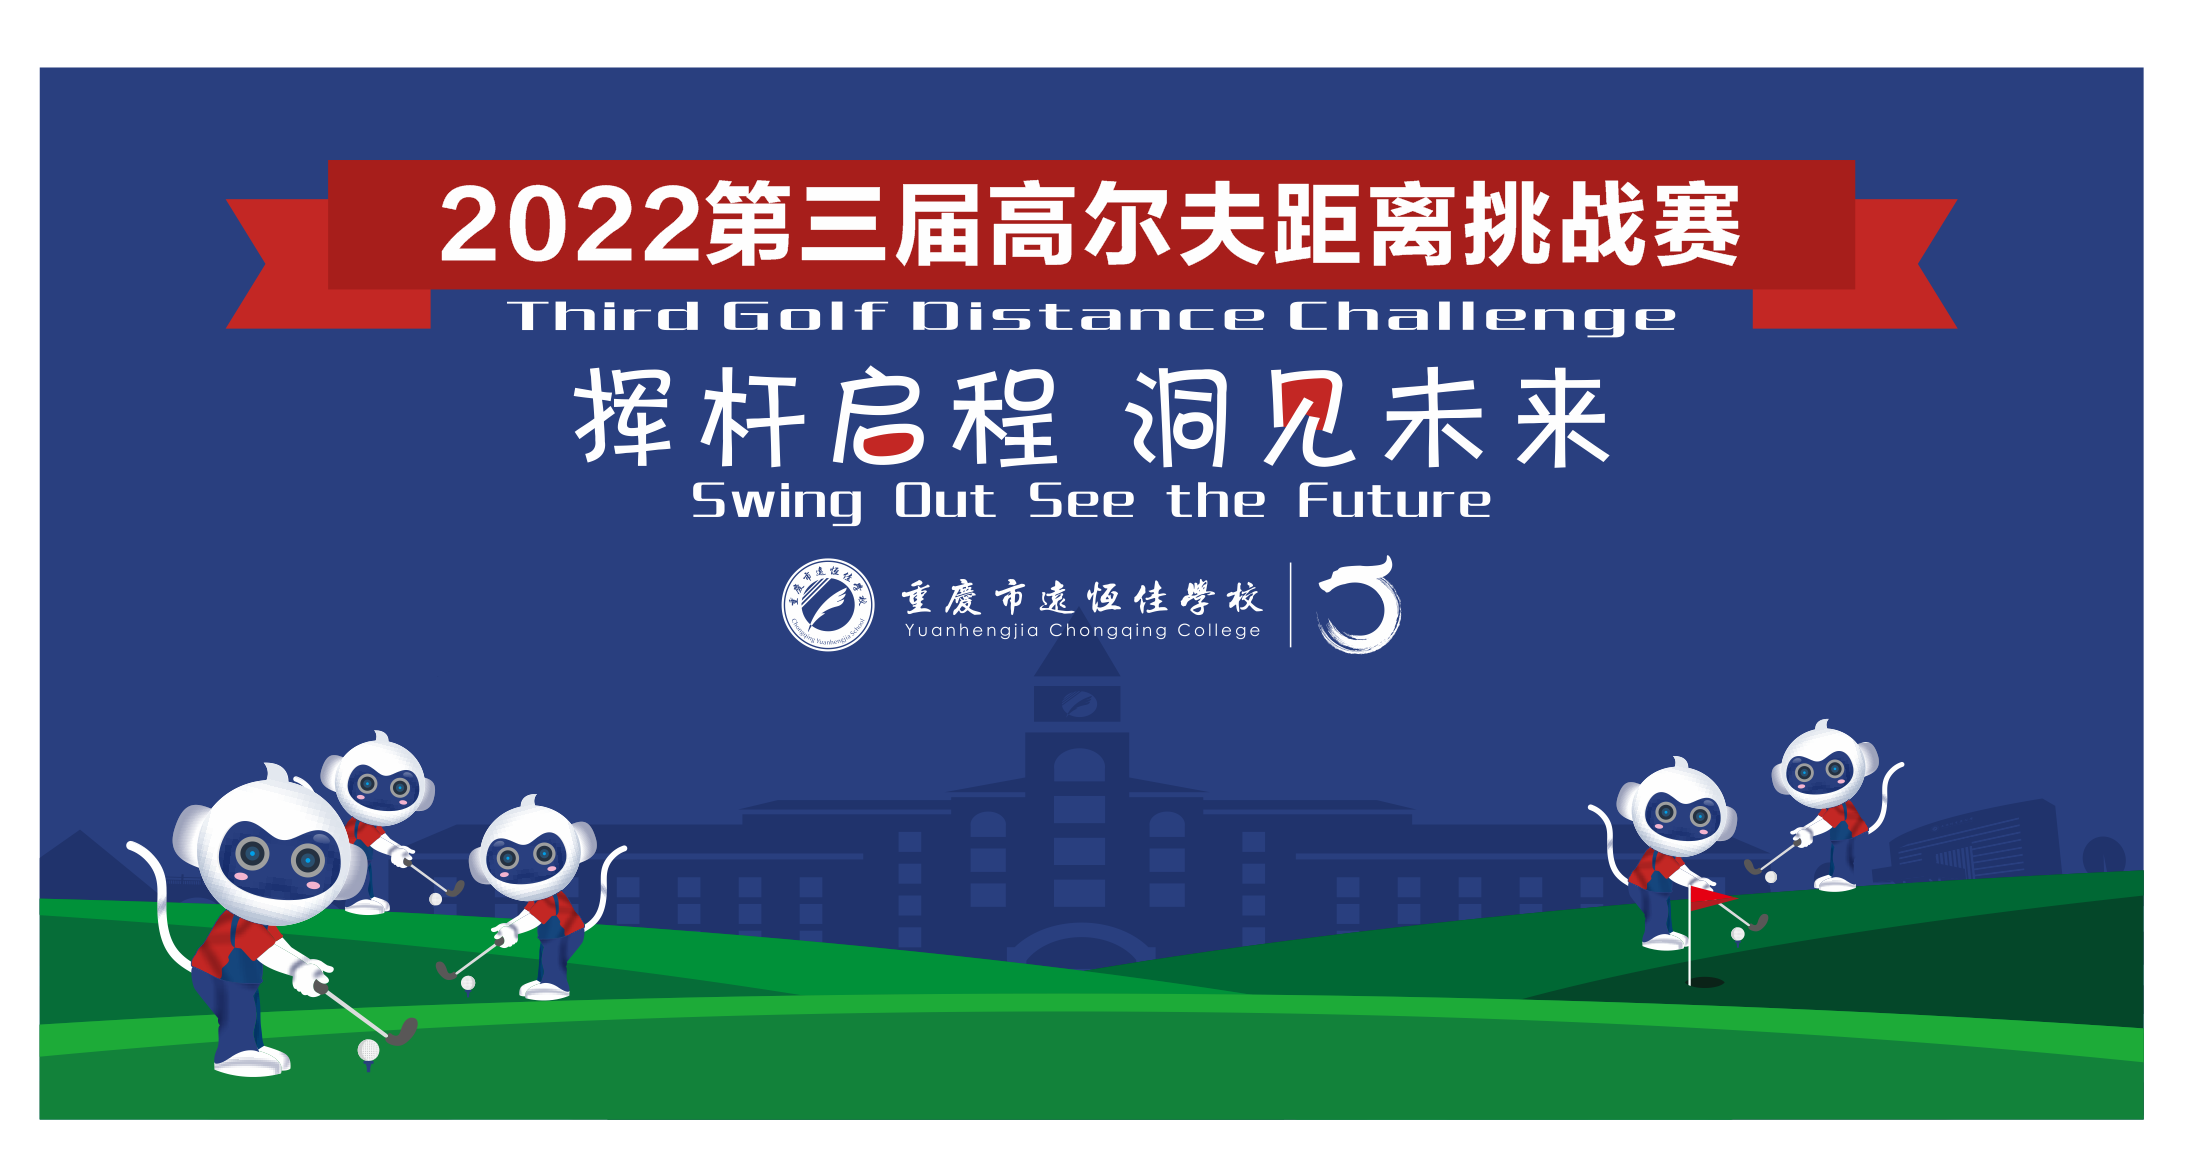 美好学校|挥杆启程 洞见未来——2022重庆市远恒佳学校第三届高尔夫距离挑战赛